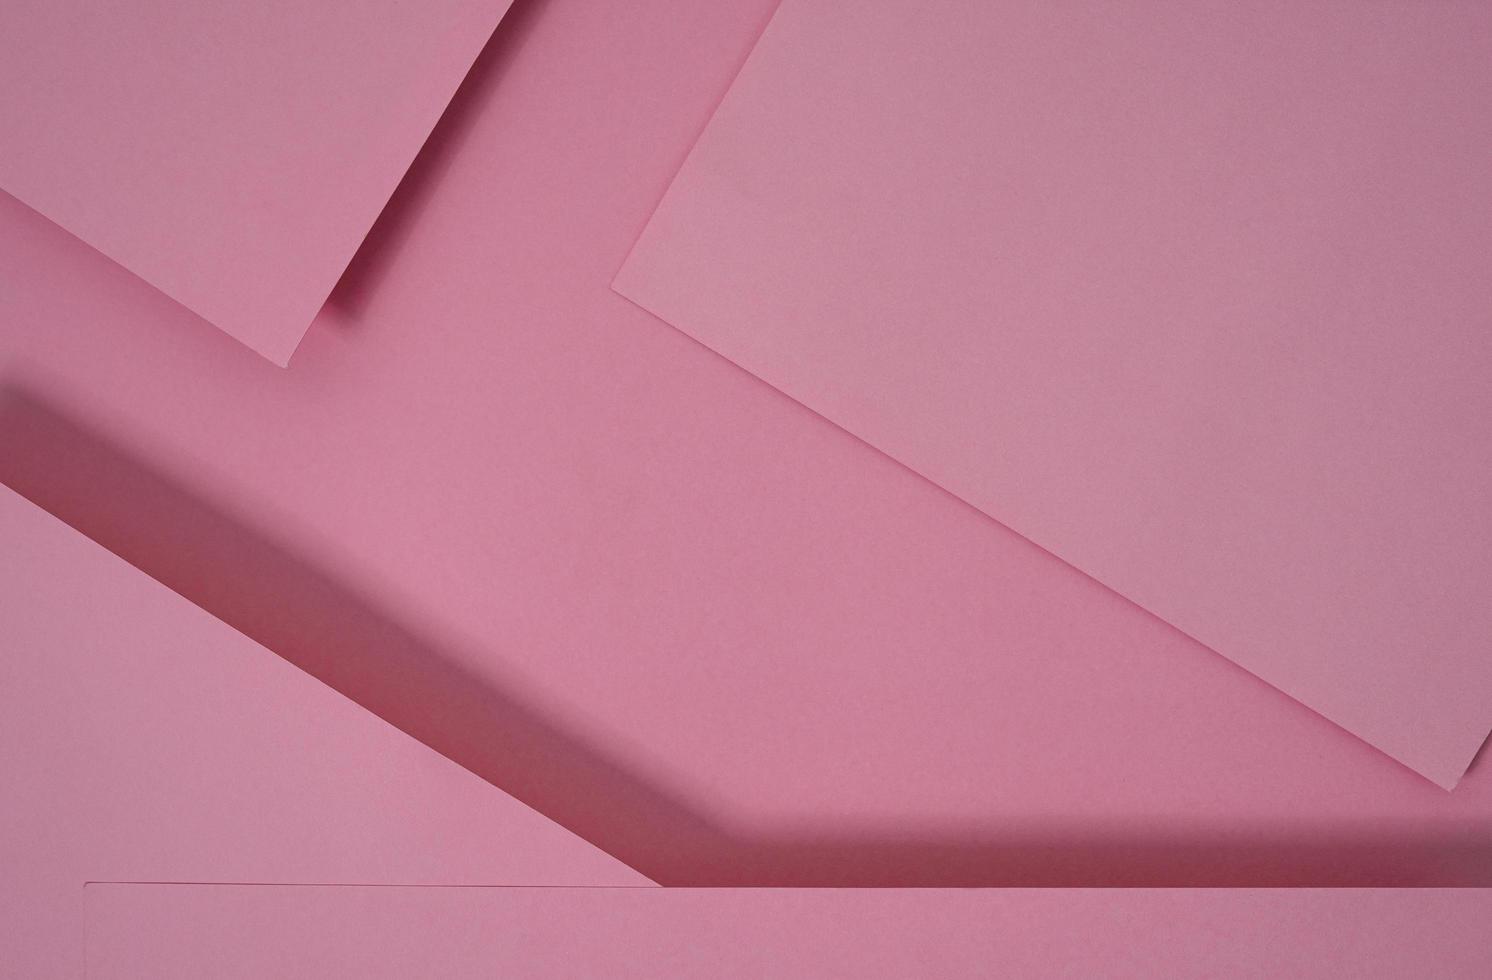 fundo de papel pop-up abstrato em rosa. arranjos abstratos criam uma textura geométrica para papel de parede, pôsteres, folhetos, etc. foto